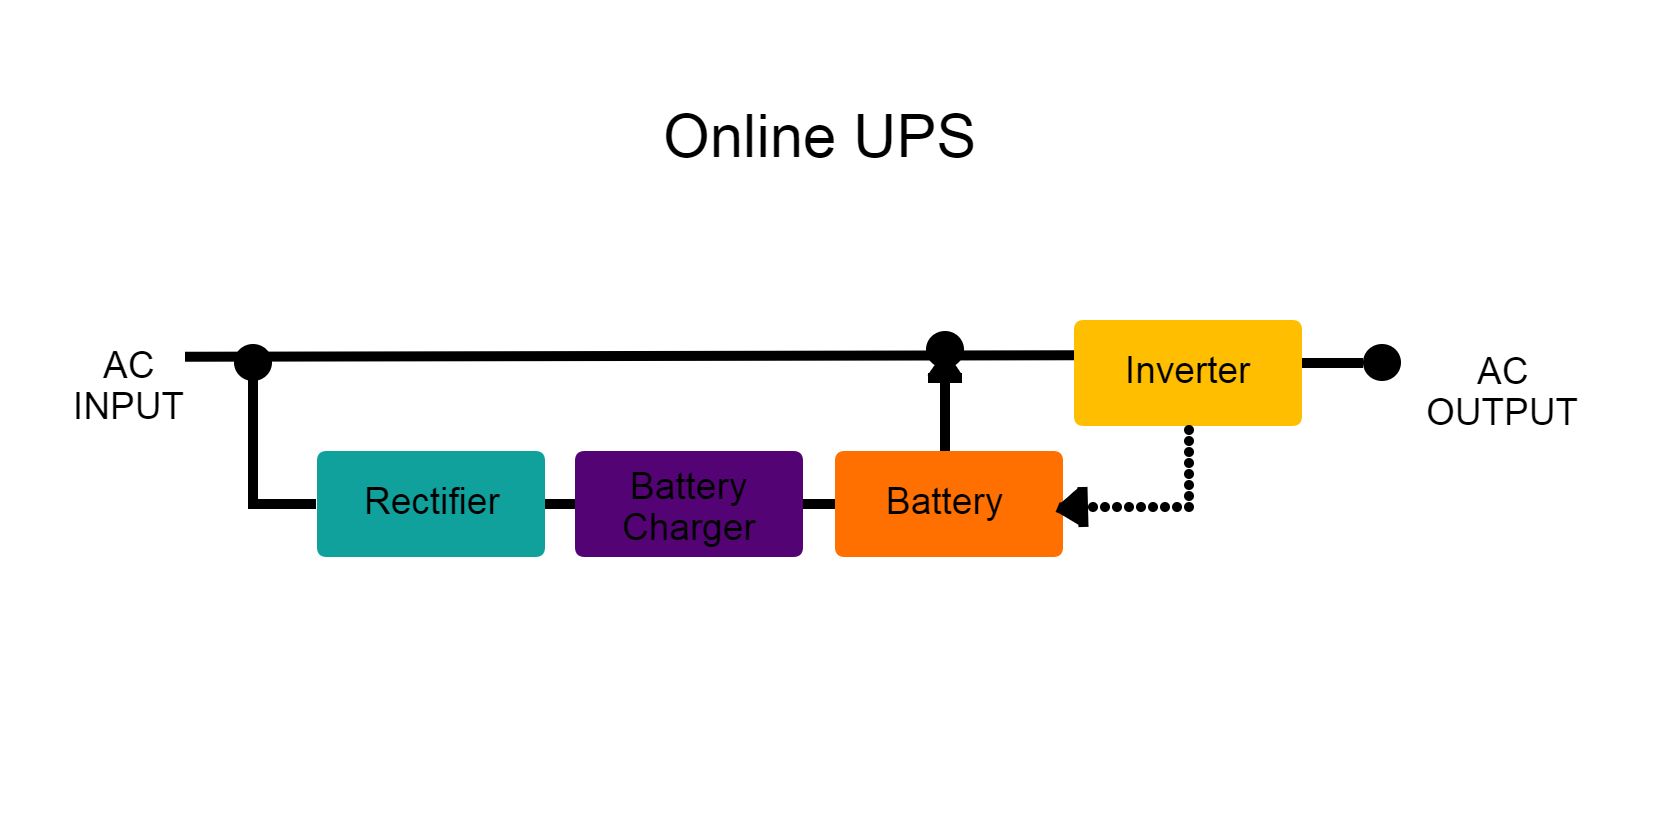 Online UPS Components Illustration